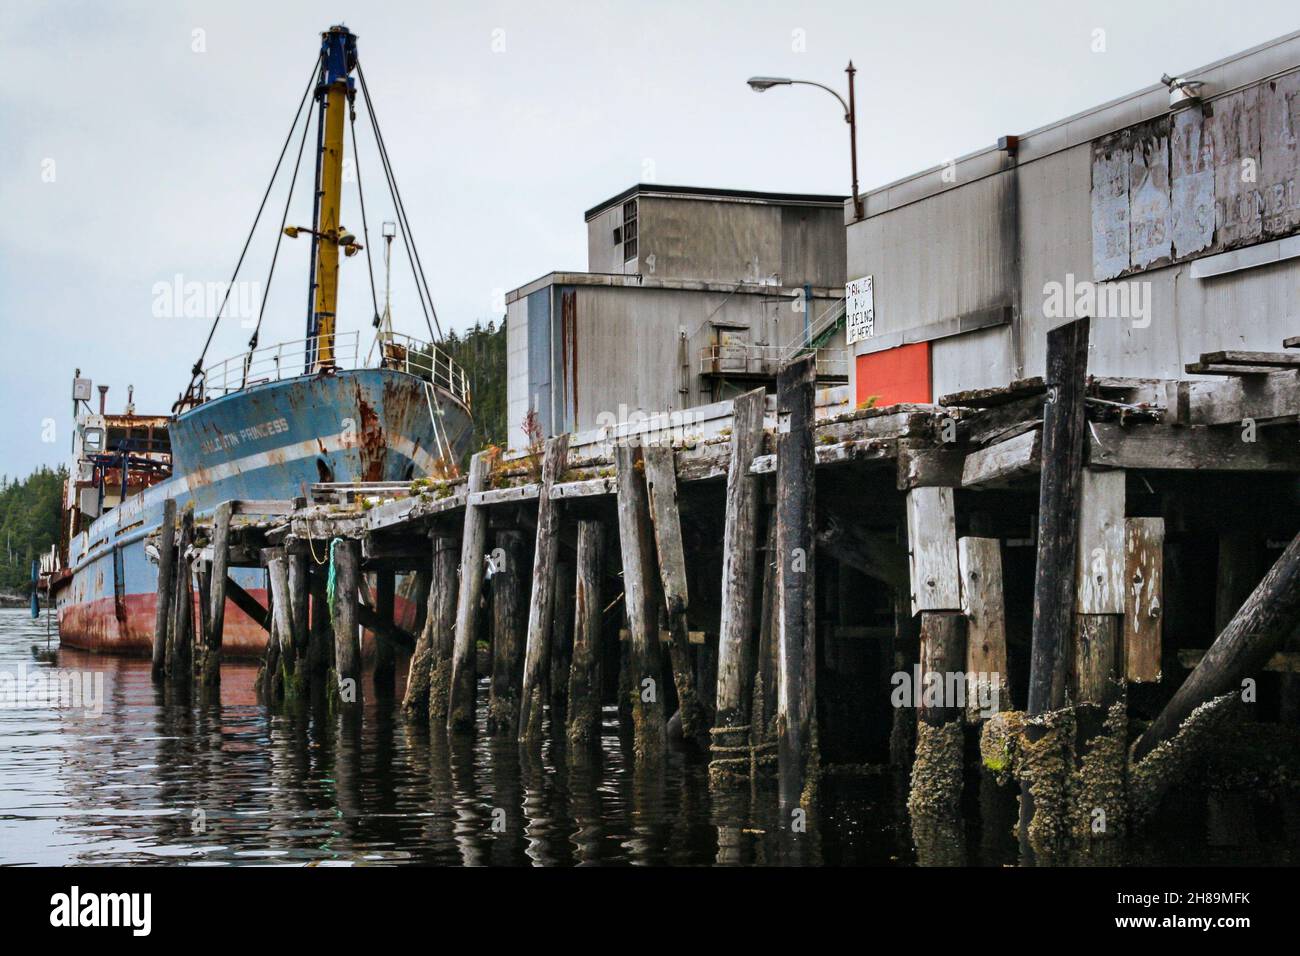 Das rostende alte Schiff, Chilcotin Princess, wurde an den baufälligen Pier in Namu gebunden, einer verlassenen Cannery Town in der Inside Passage von BC (2009). Stockfoto